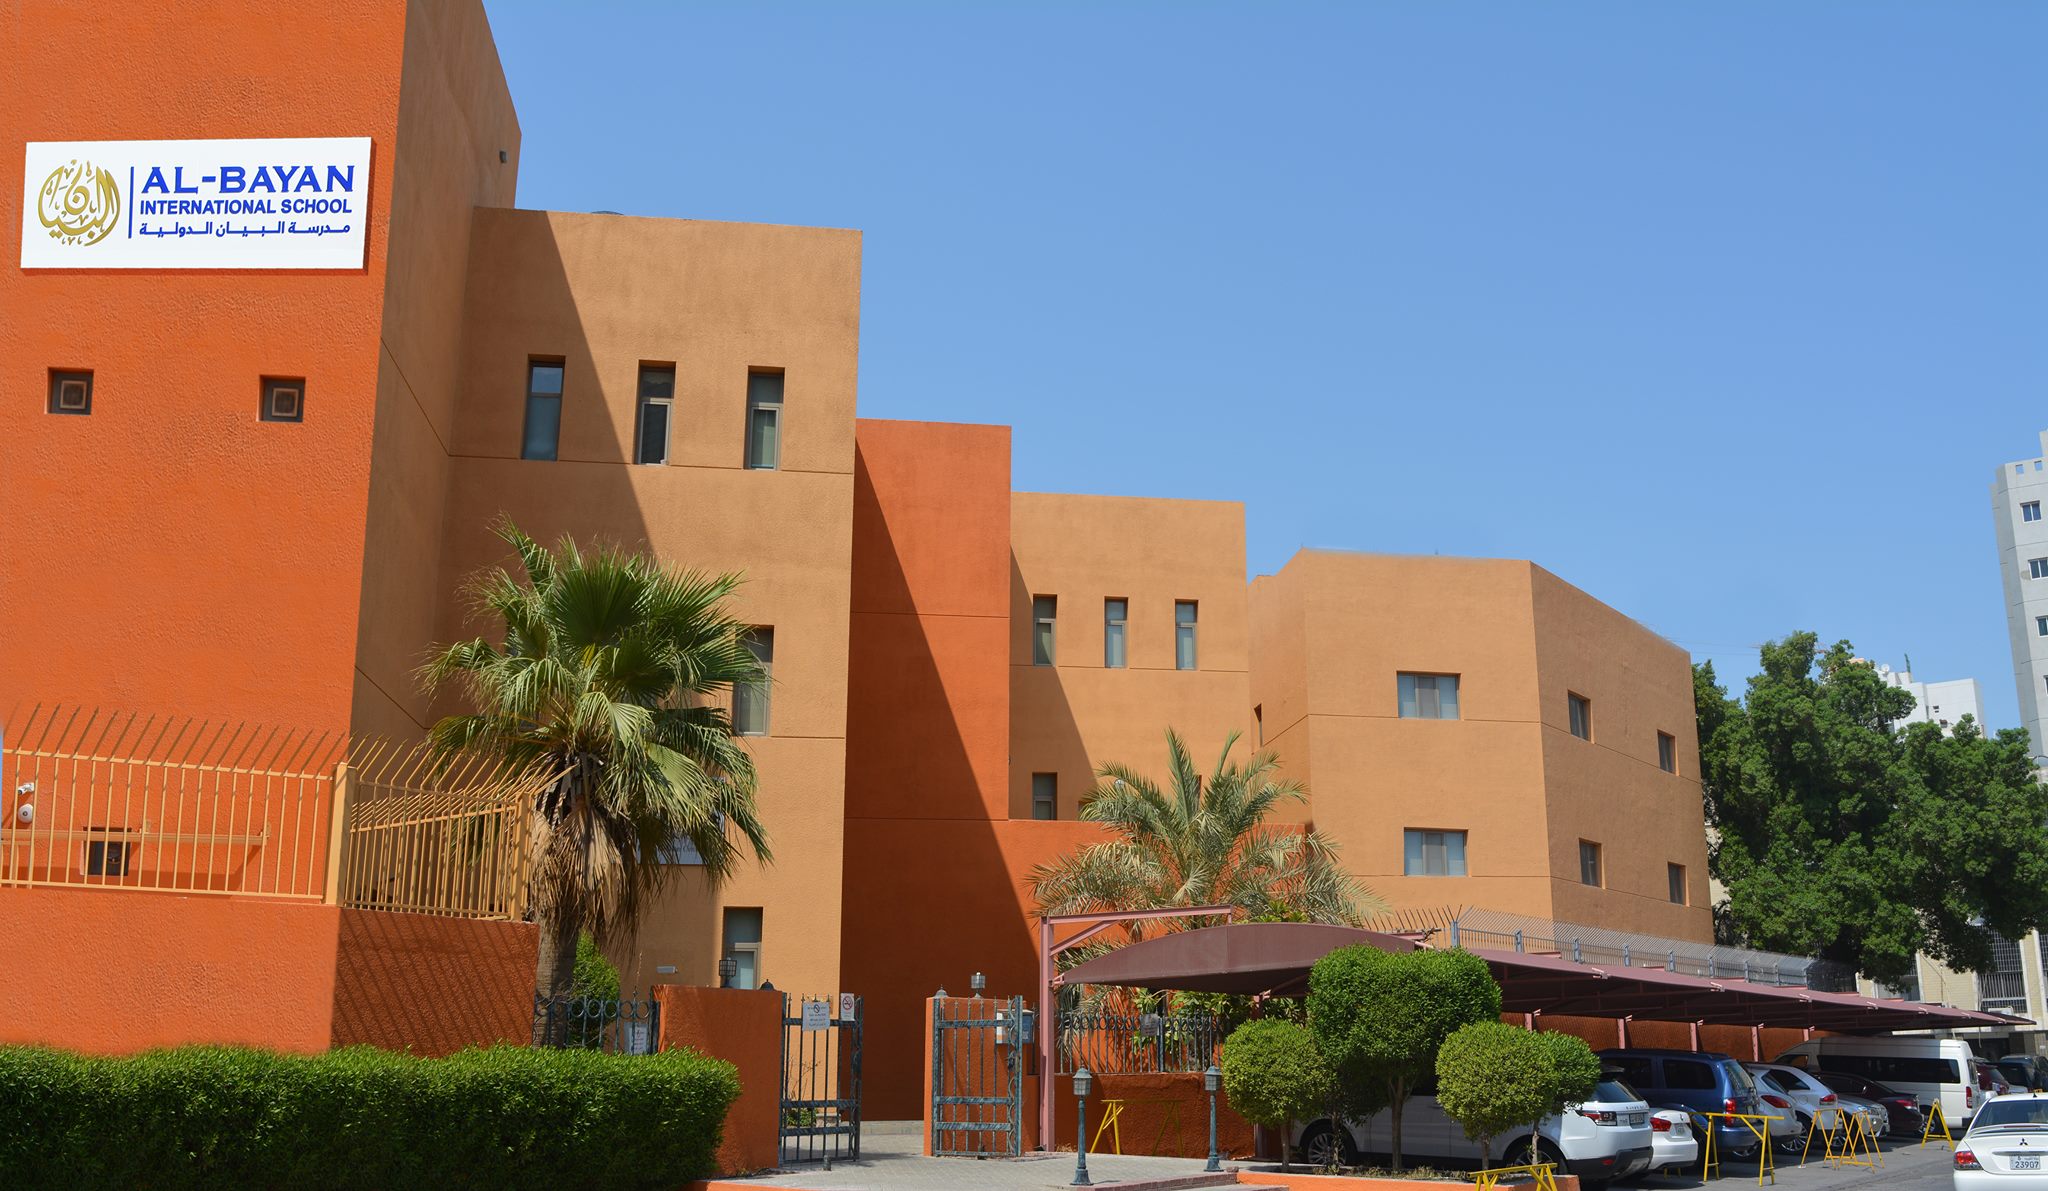 Al-Bayan International School